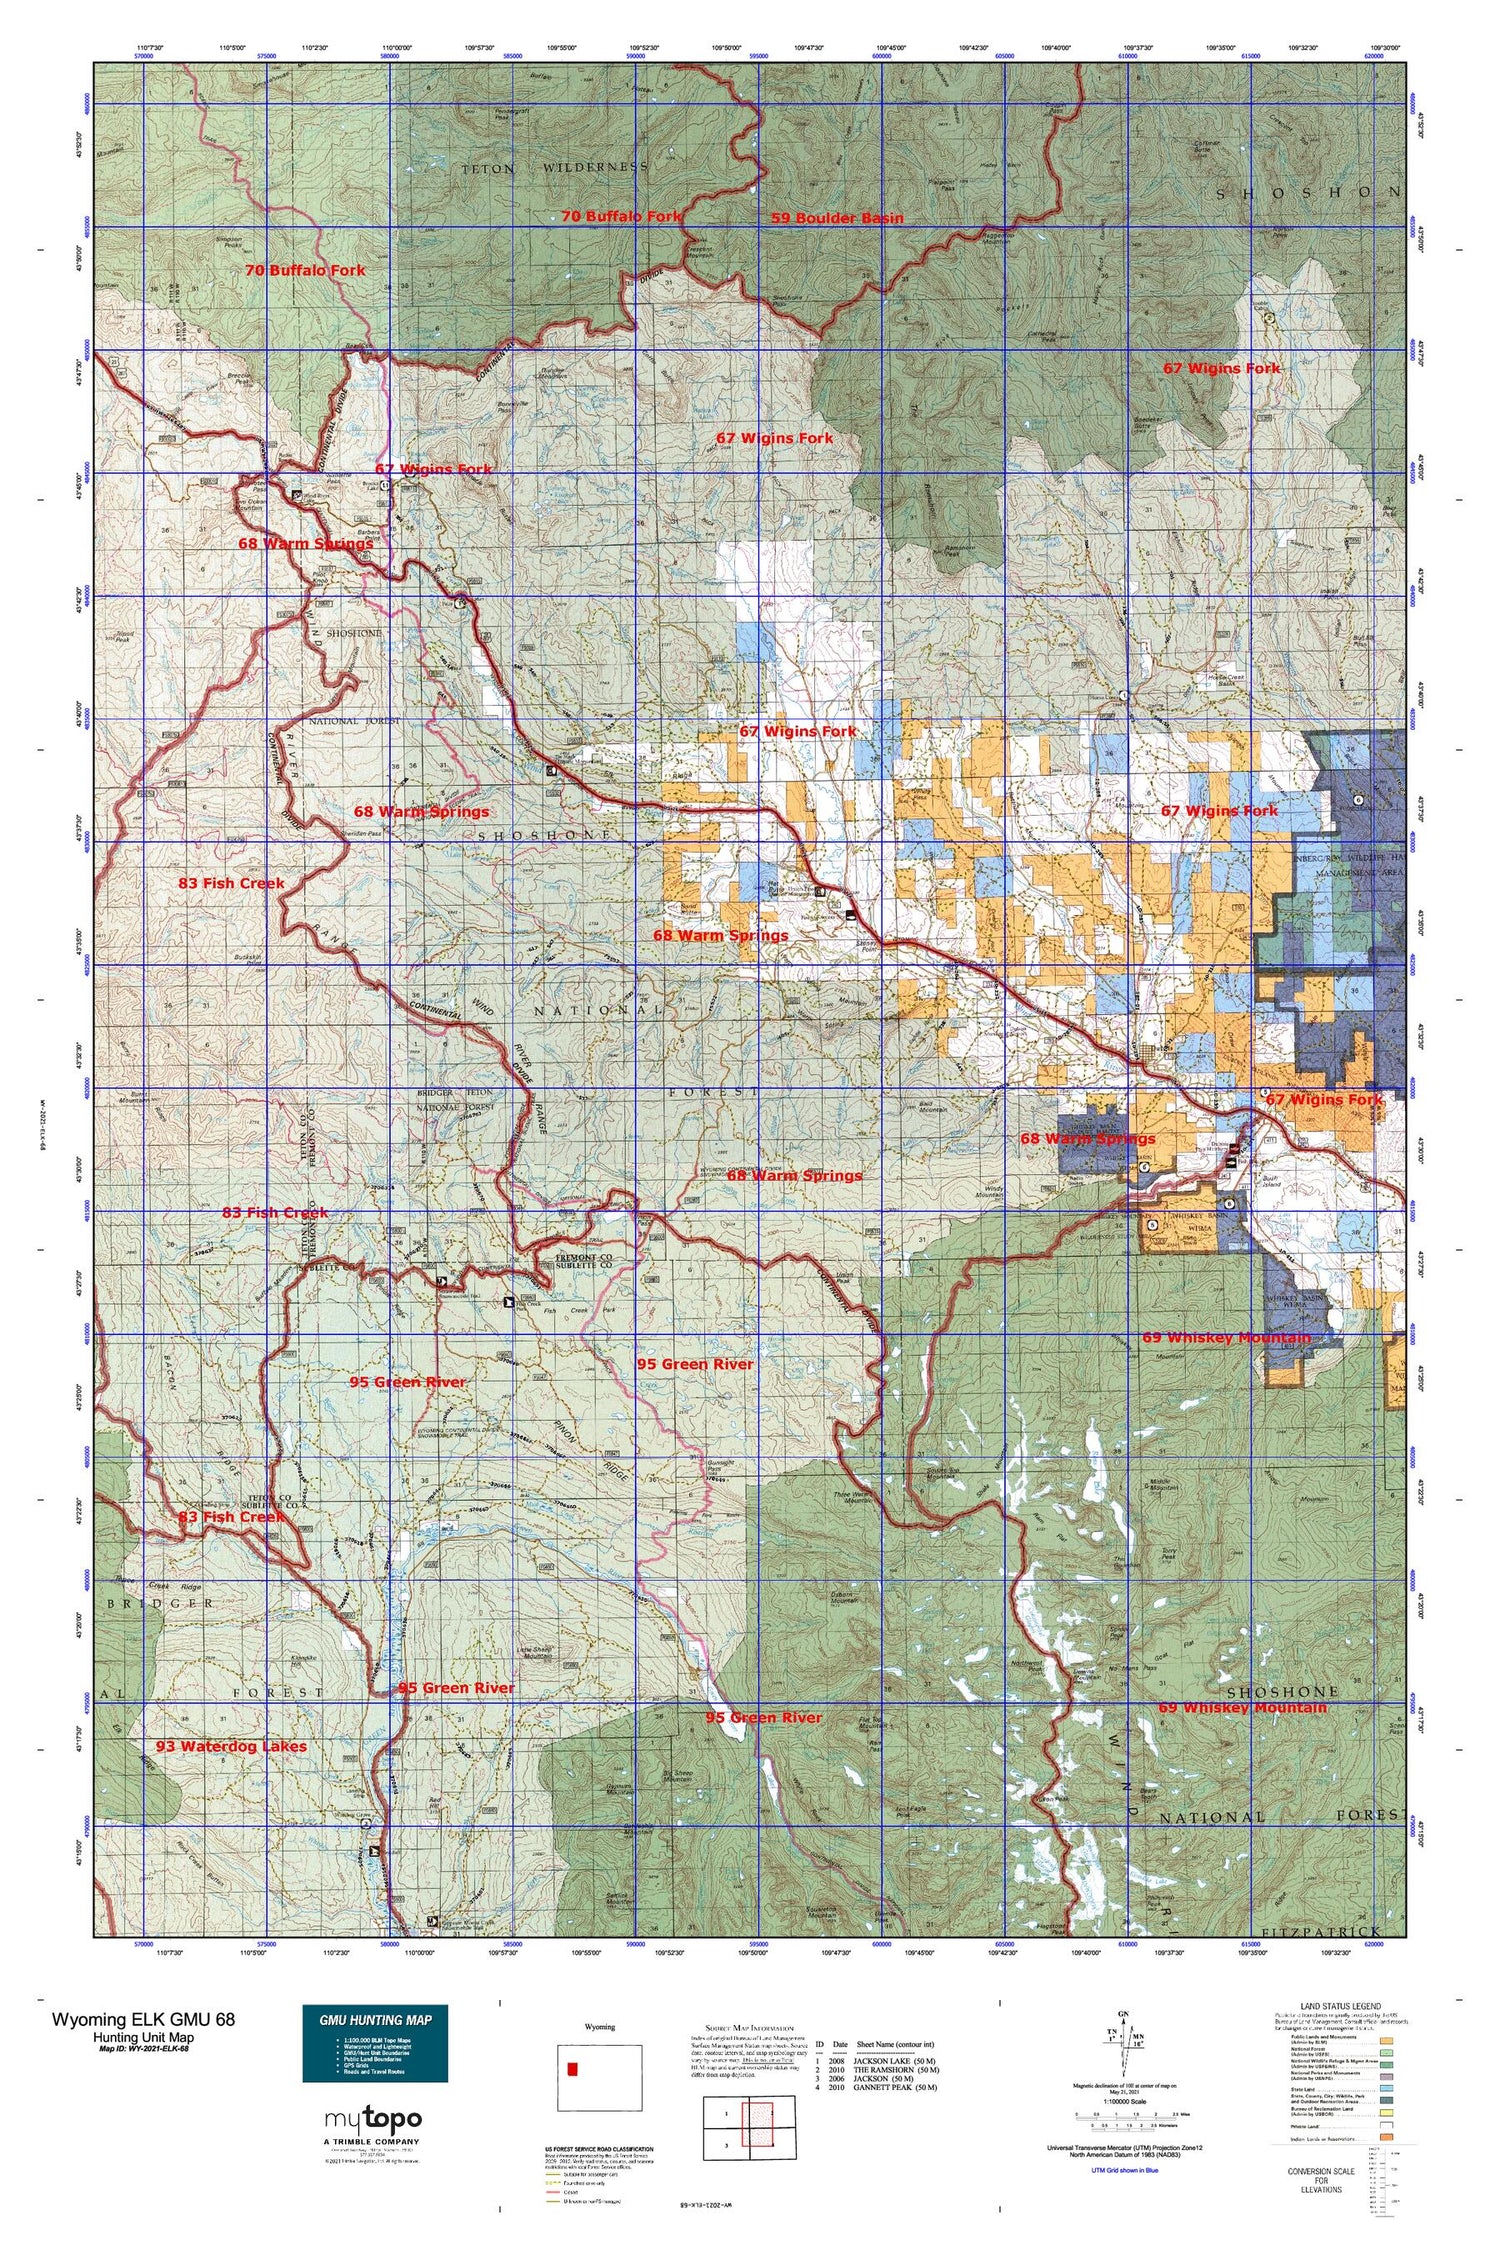 Wyoming Elk GMU 68 Map Image